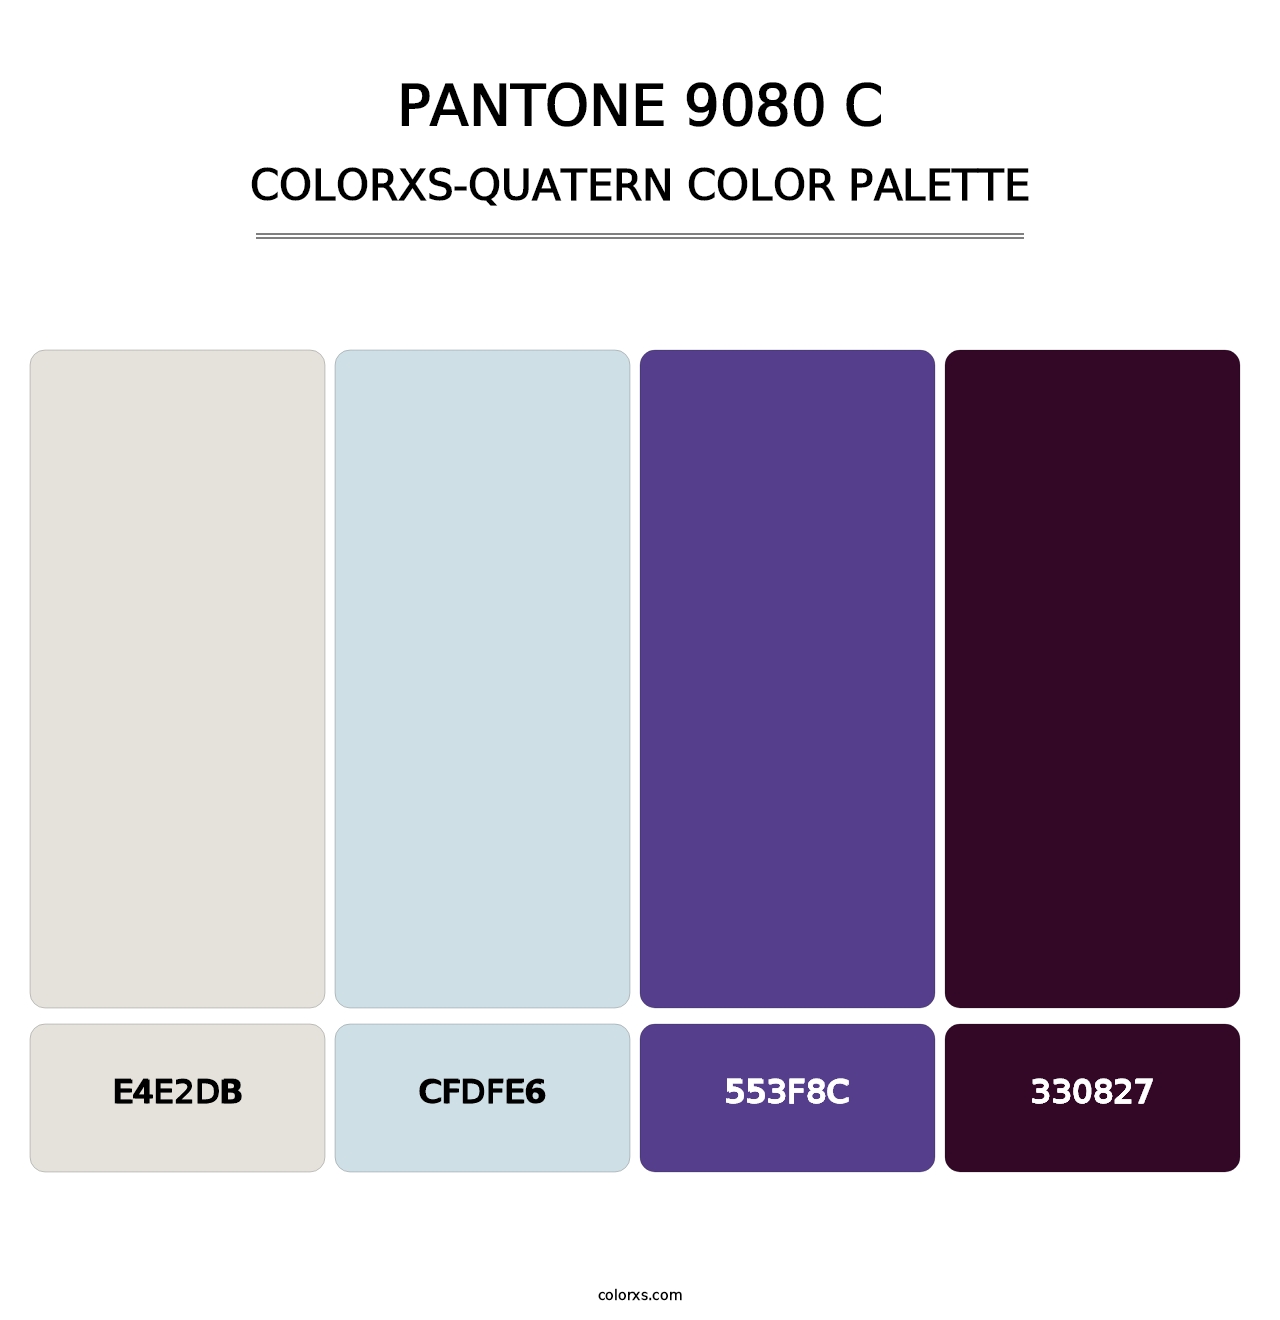 PANTONE 9080 C - Colorxs Quatern Palette